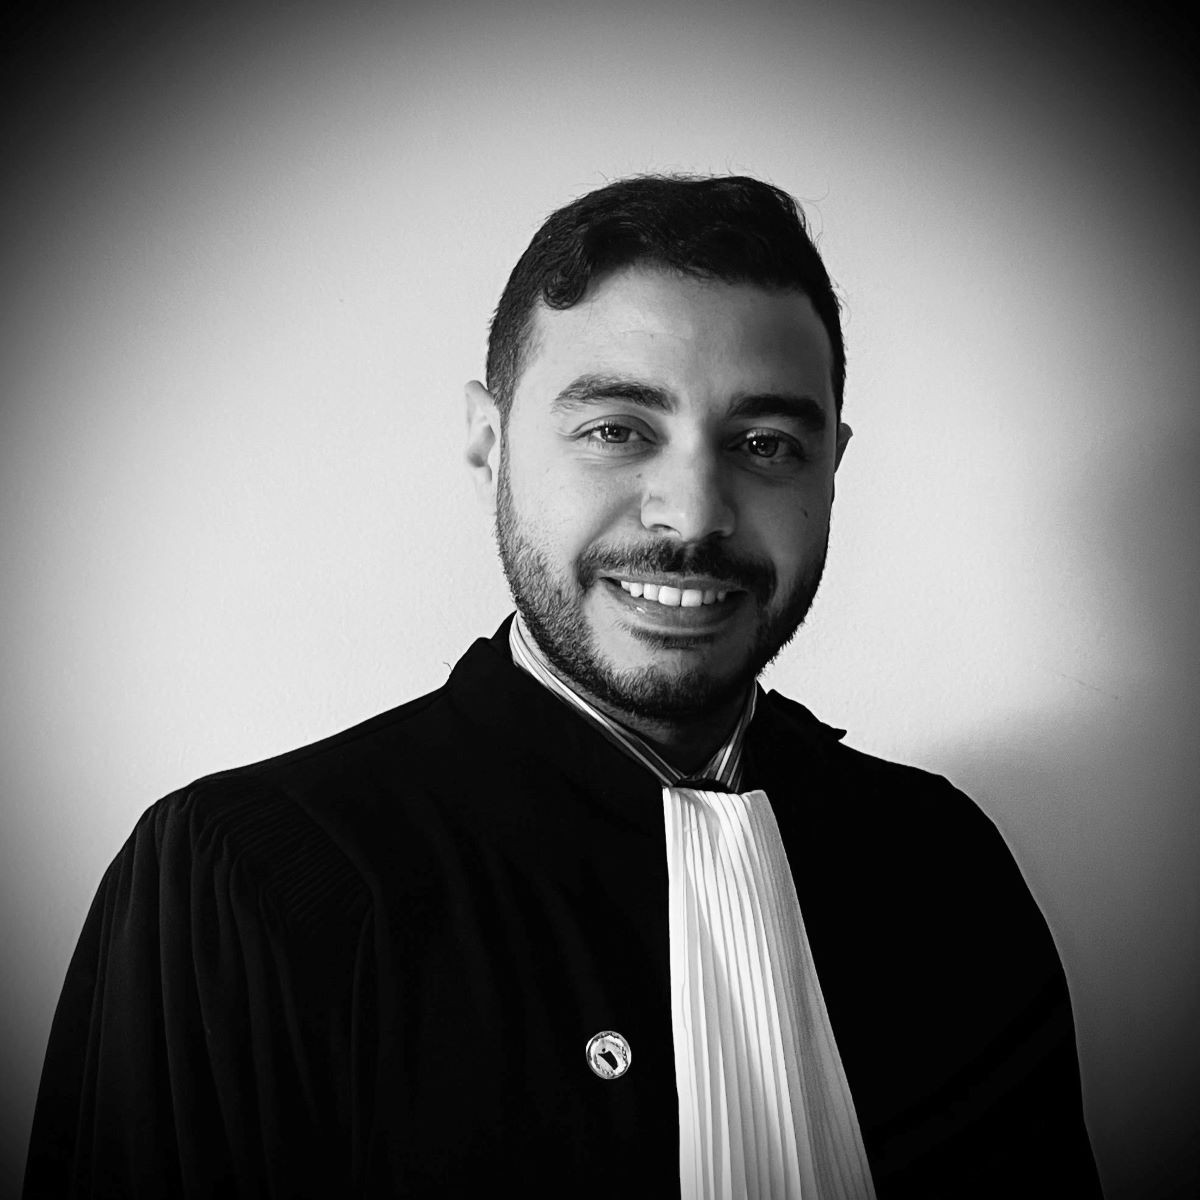 Maroc : l'indépendance du pouvoir judiciaire, garantie de la justice et de l'équité. Par Ilias Belbachir, Juriste.